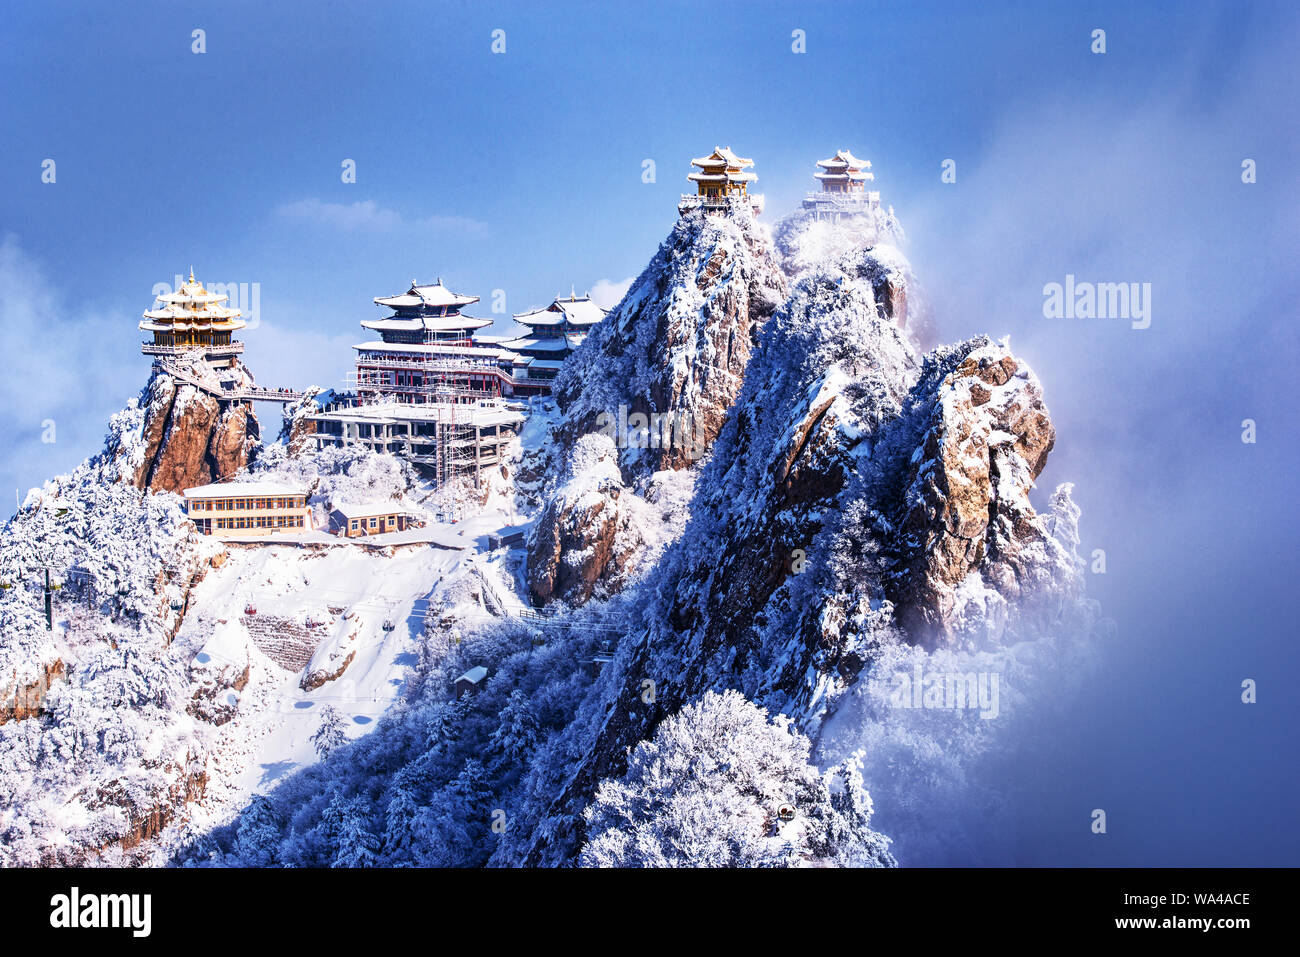 Henan laojun mountain Stock Photo